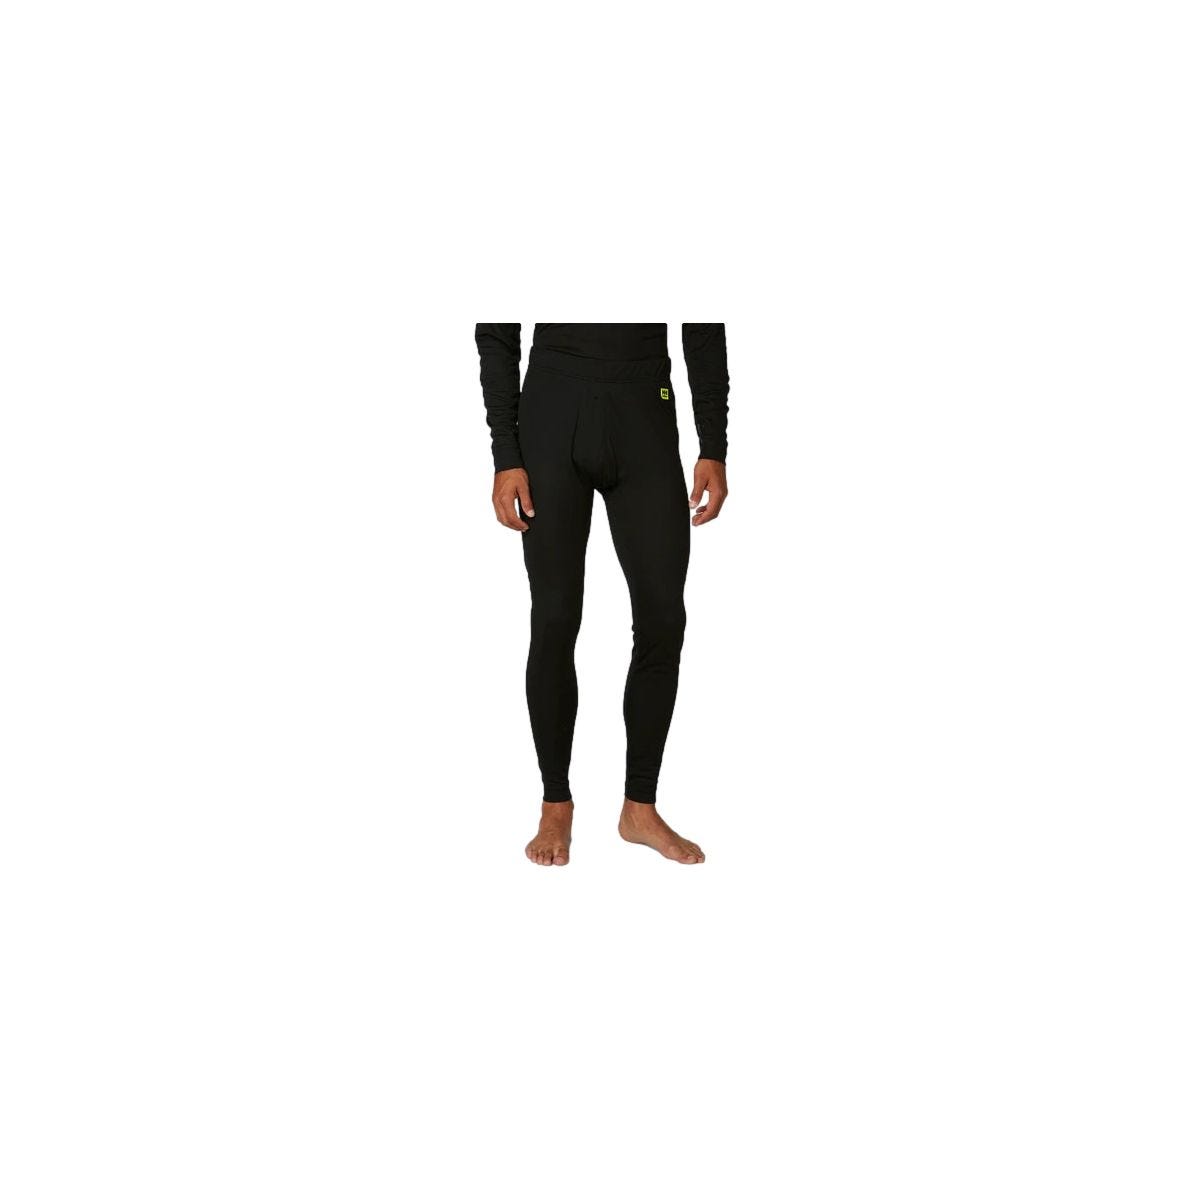 Pantalon sous-vêtement technique Lifa Noir - Helly Hansen - Taille L 2